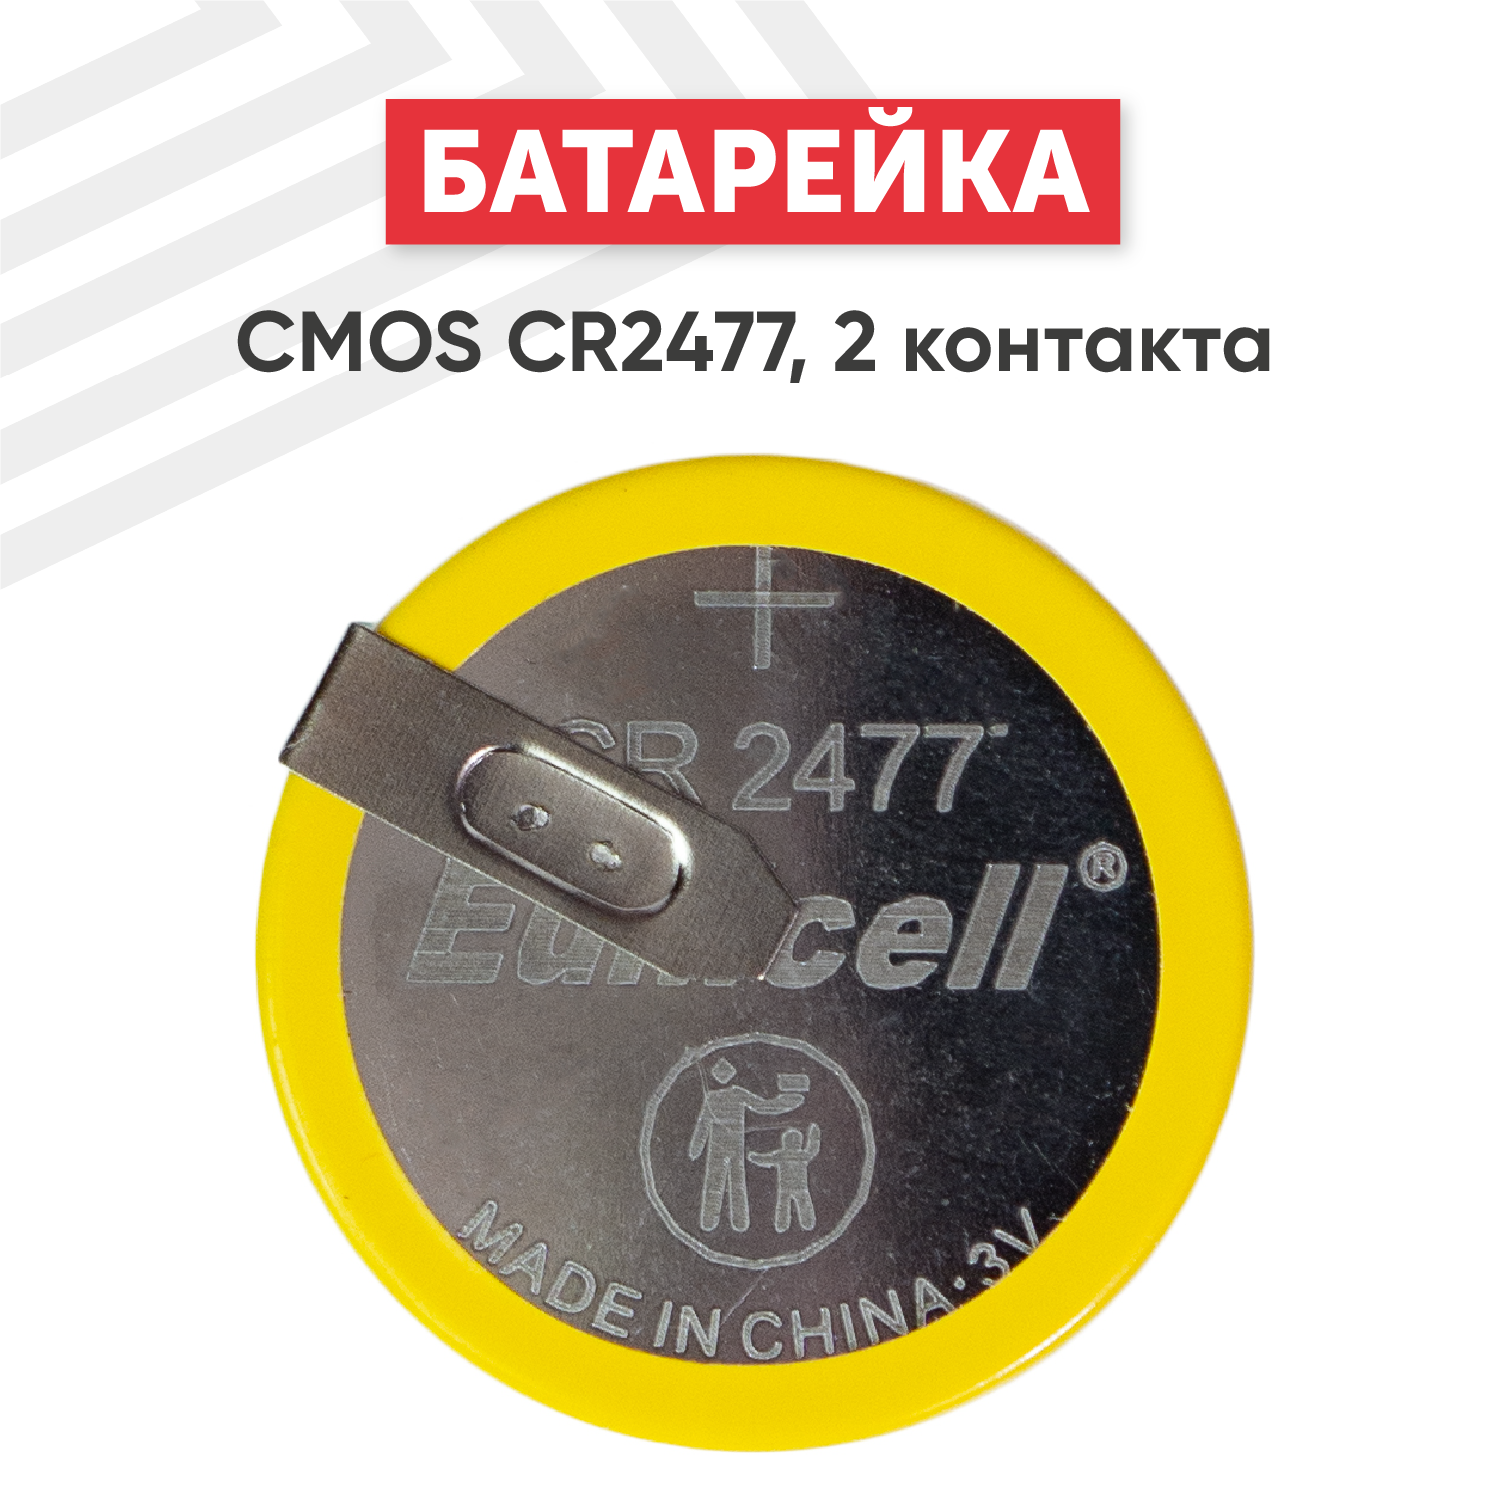 Батарейка (элемент питания таблетка) CMOS CR2477 3В 1060мАч 2 контакта для игрушек фонариков